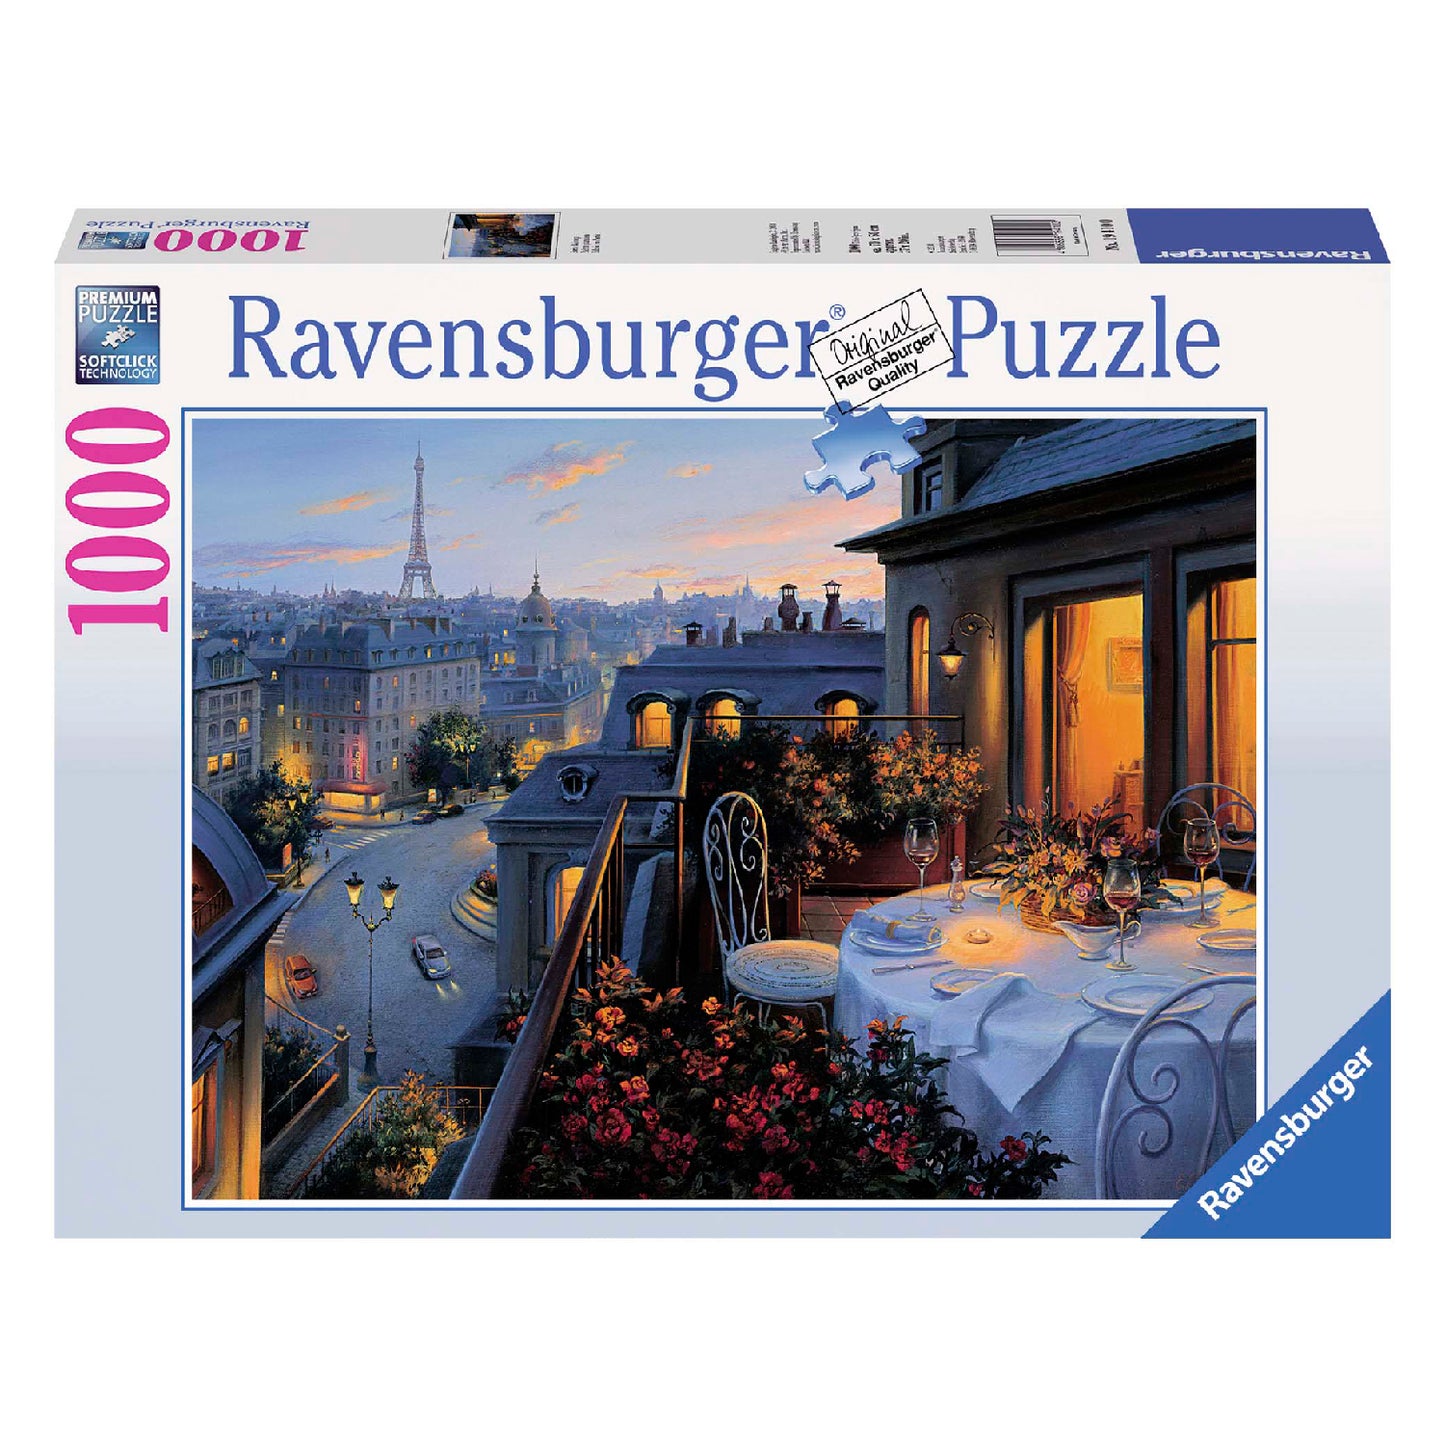 Ravensburger - Puzzle 1000 PZ. Fantasy